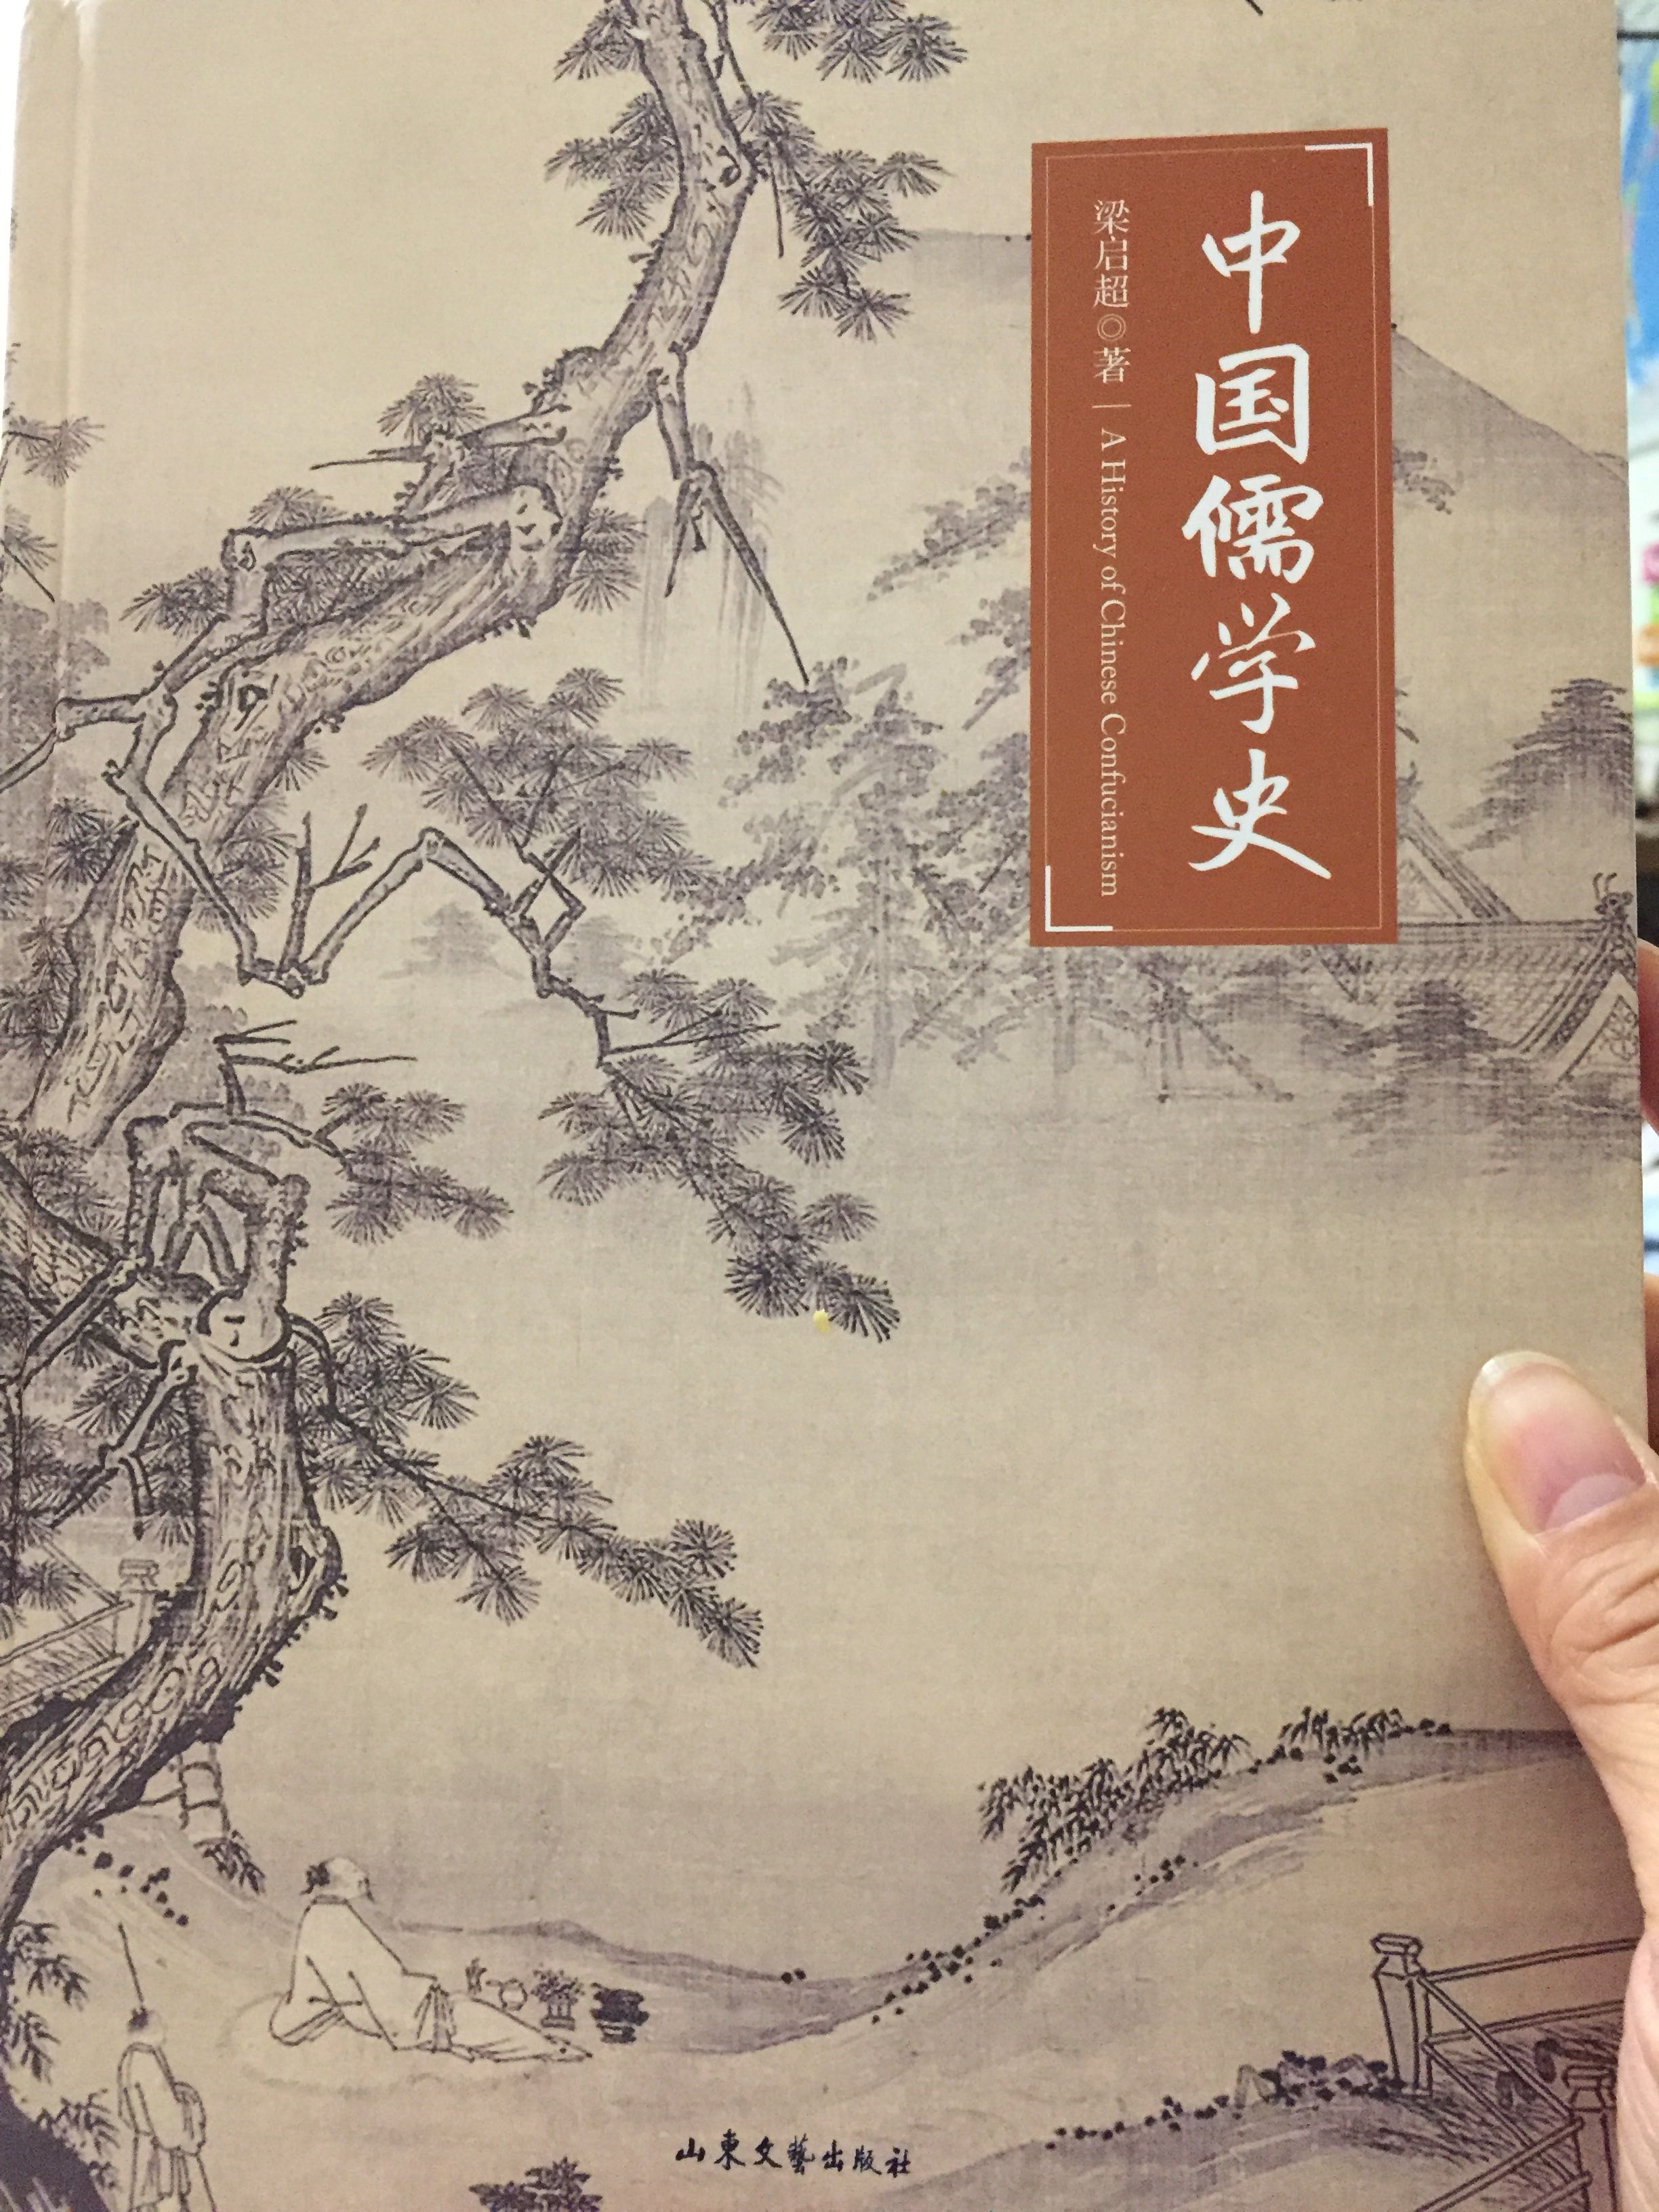 印刷排版都不错，以此了解中国文化的历史演变。